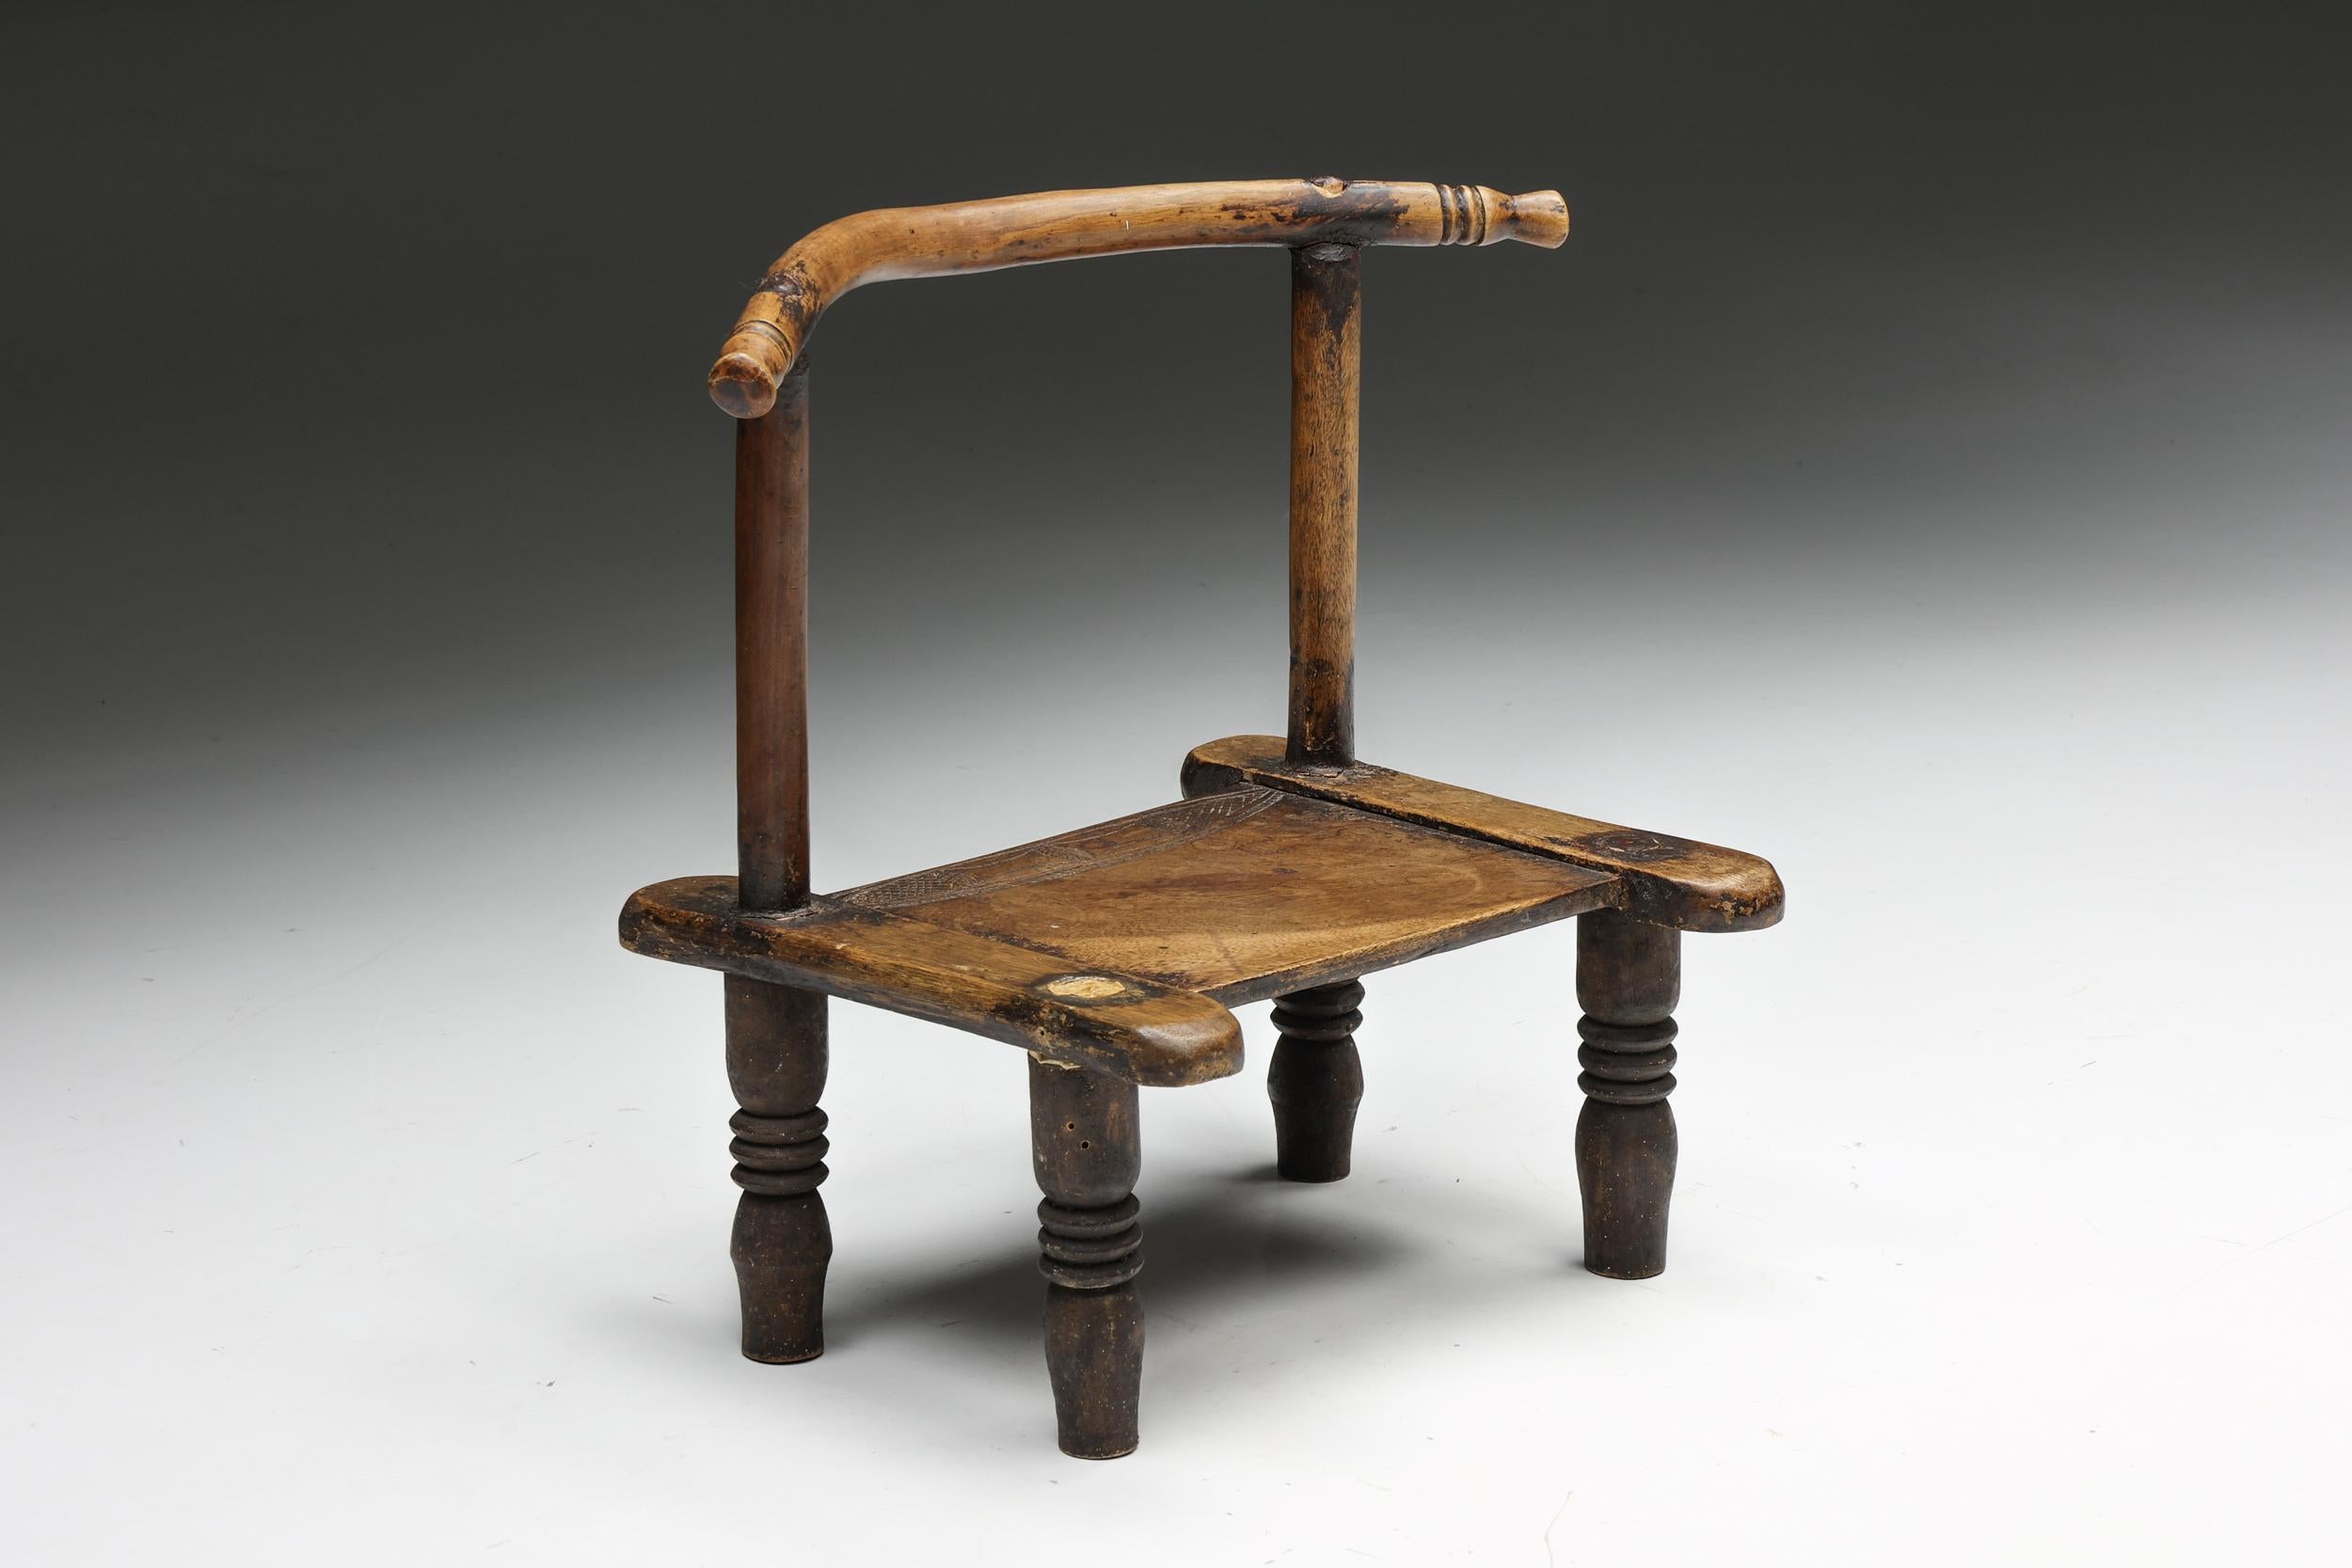 Chaise en bois rustique française, incarnant l'essence de la philosophie wabi-sabi. Réalisée avec un art méticuleux, cette pièce est une expression unique de la beauté organique, caractérisée par un remarquable travail du bois et une patine